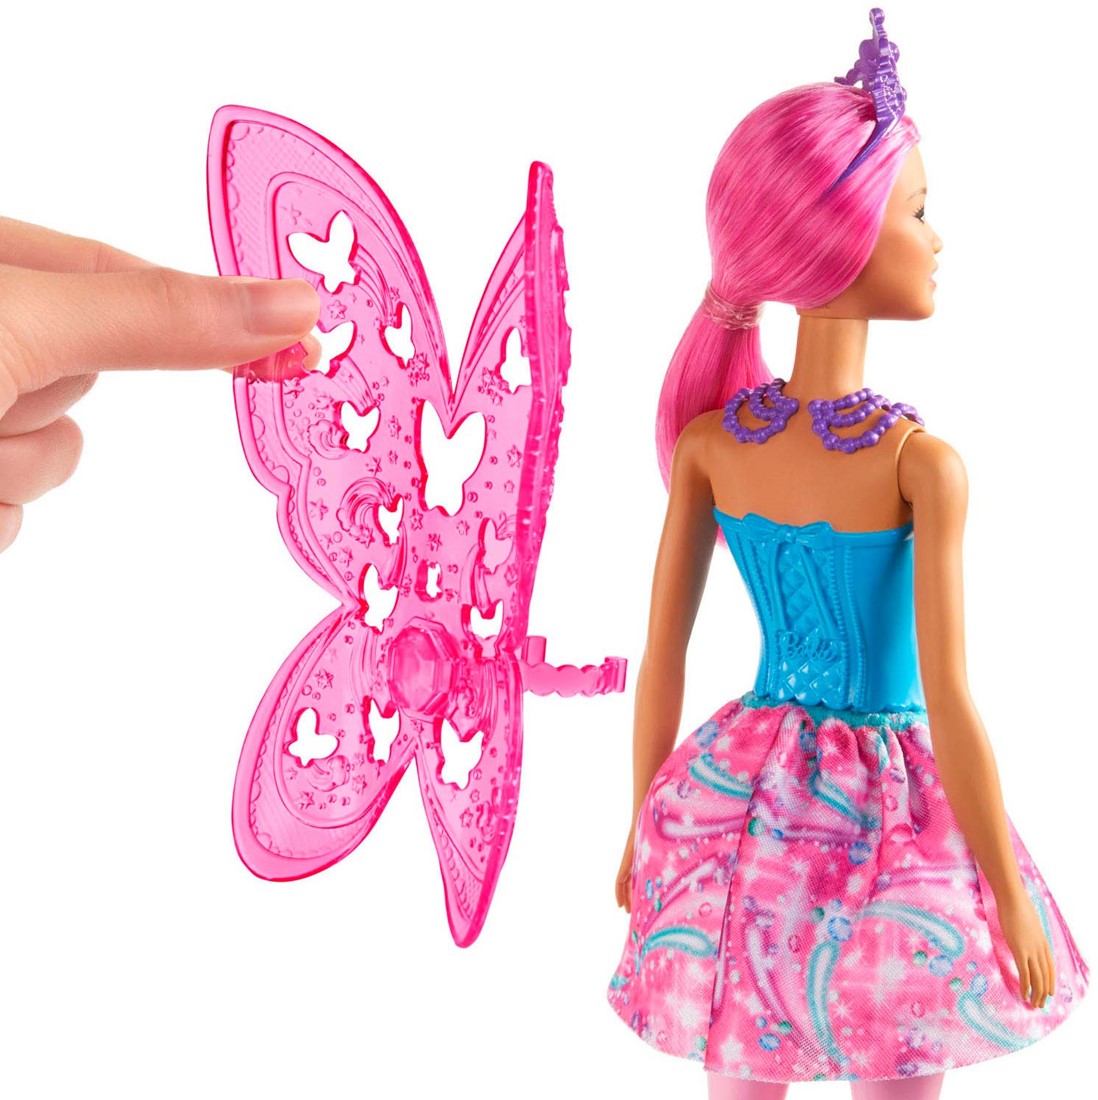 Direct Beschrijving kalender Barbie Pop Dreamtopia Fee Roze Haar En Vleugels bij Planet Happy